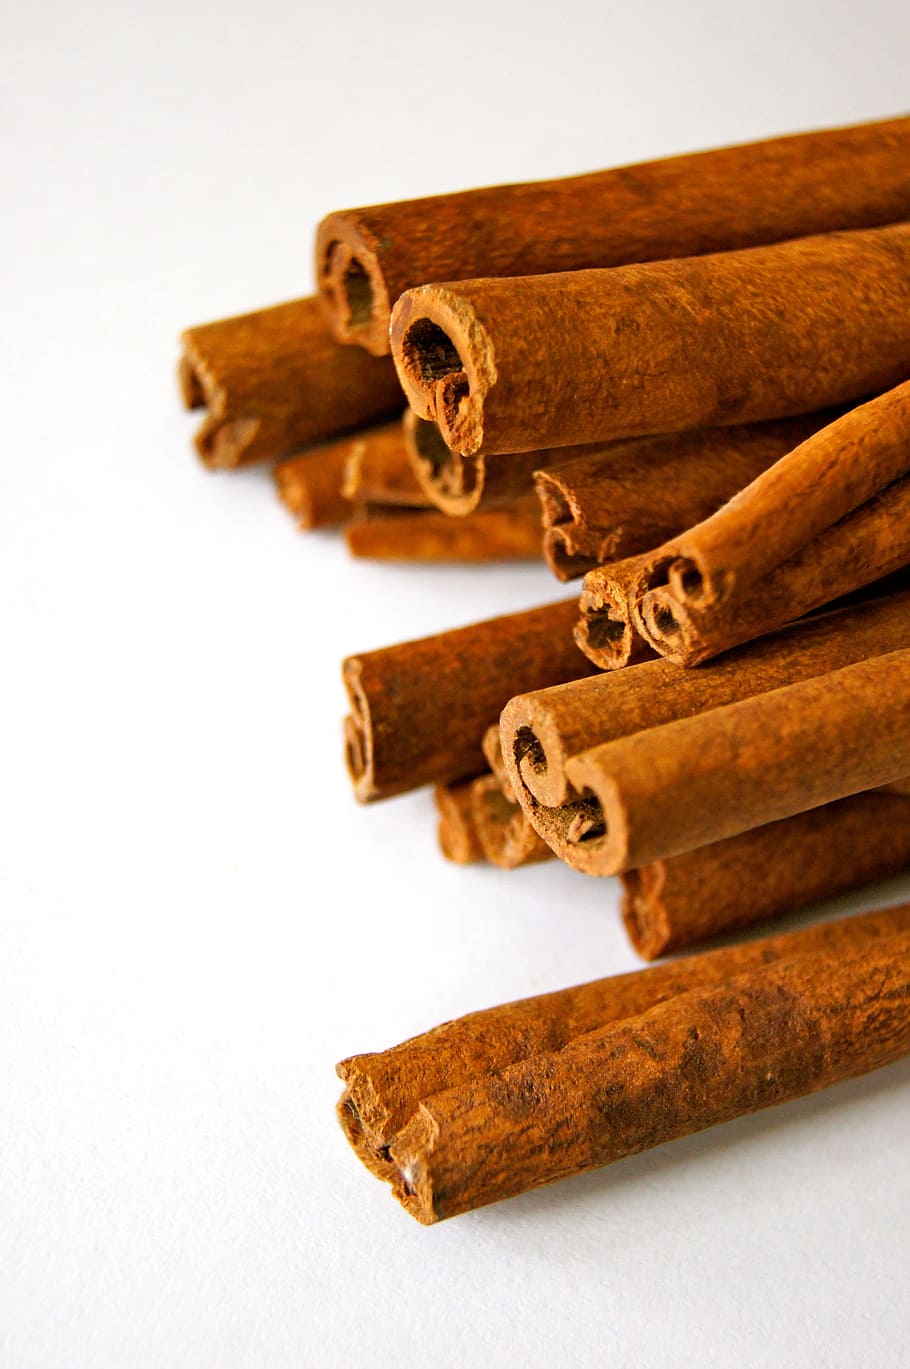 brown, wood, stick, lot, tobacco, roll, cinnamon, cinnamon stick, rod, kitchen